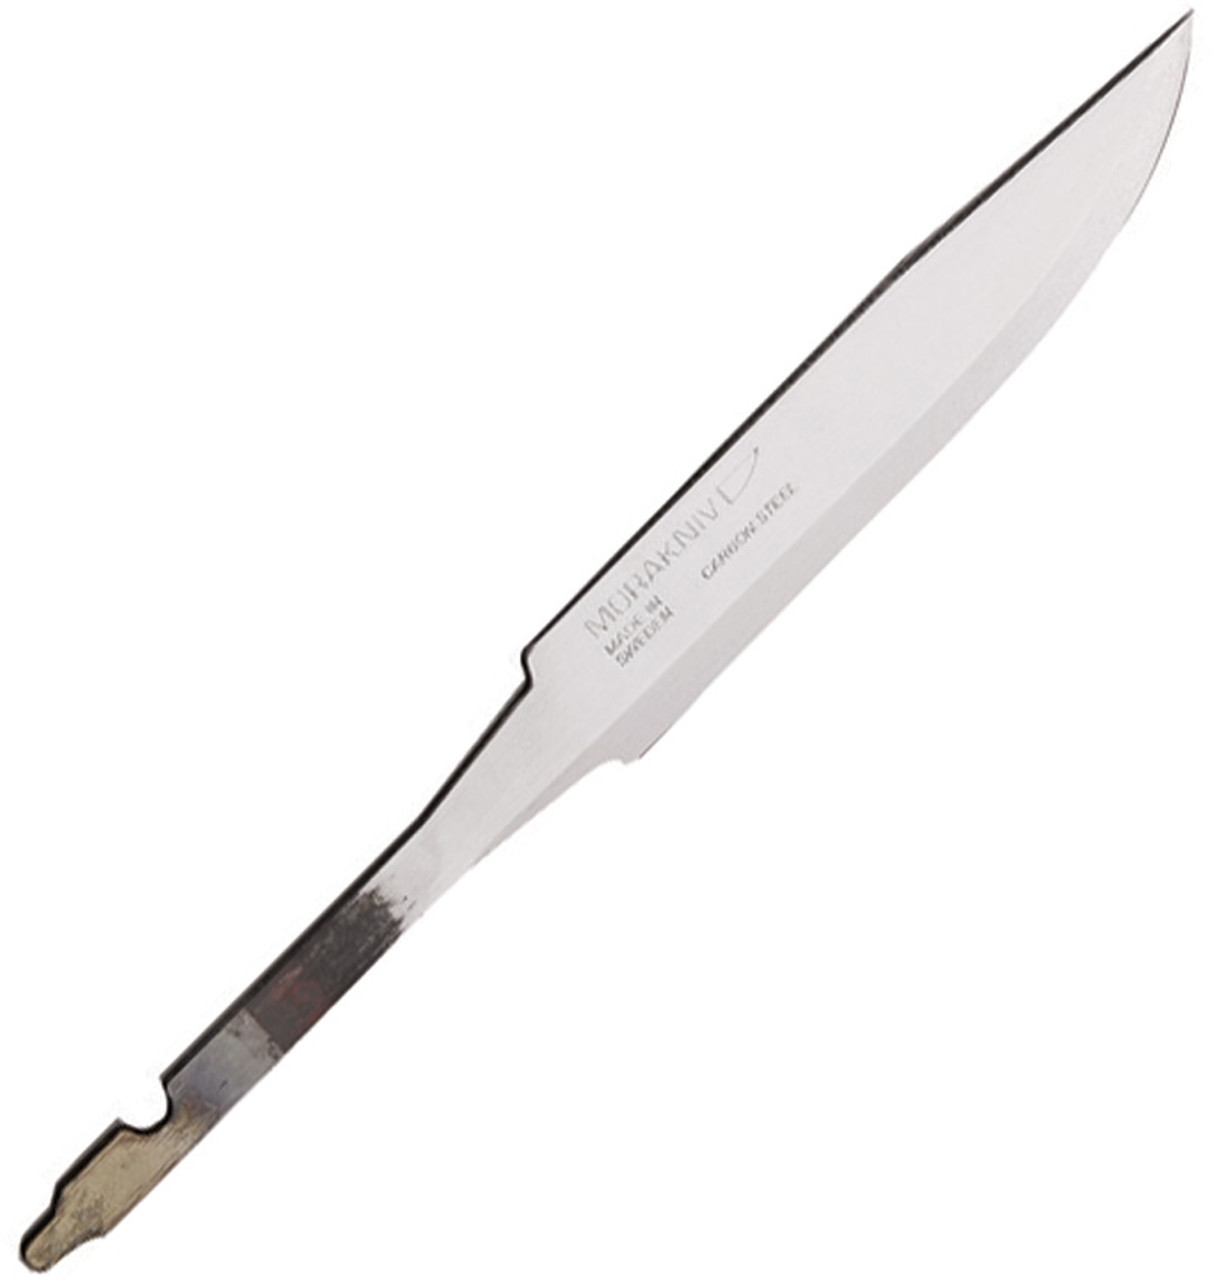 Mora Sweden Morakniv Companion MG Survival Hunting Knife Carbon Steel  FT10258